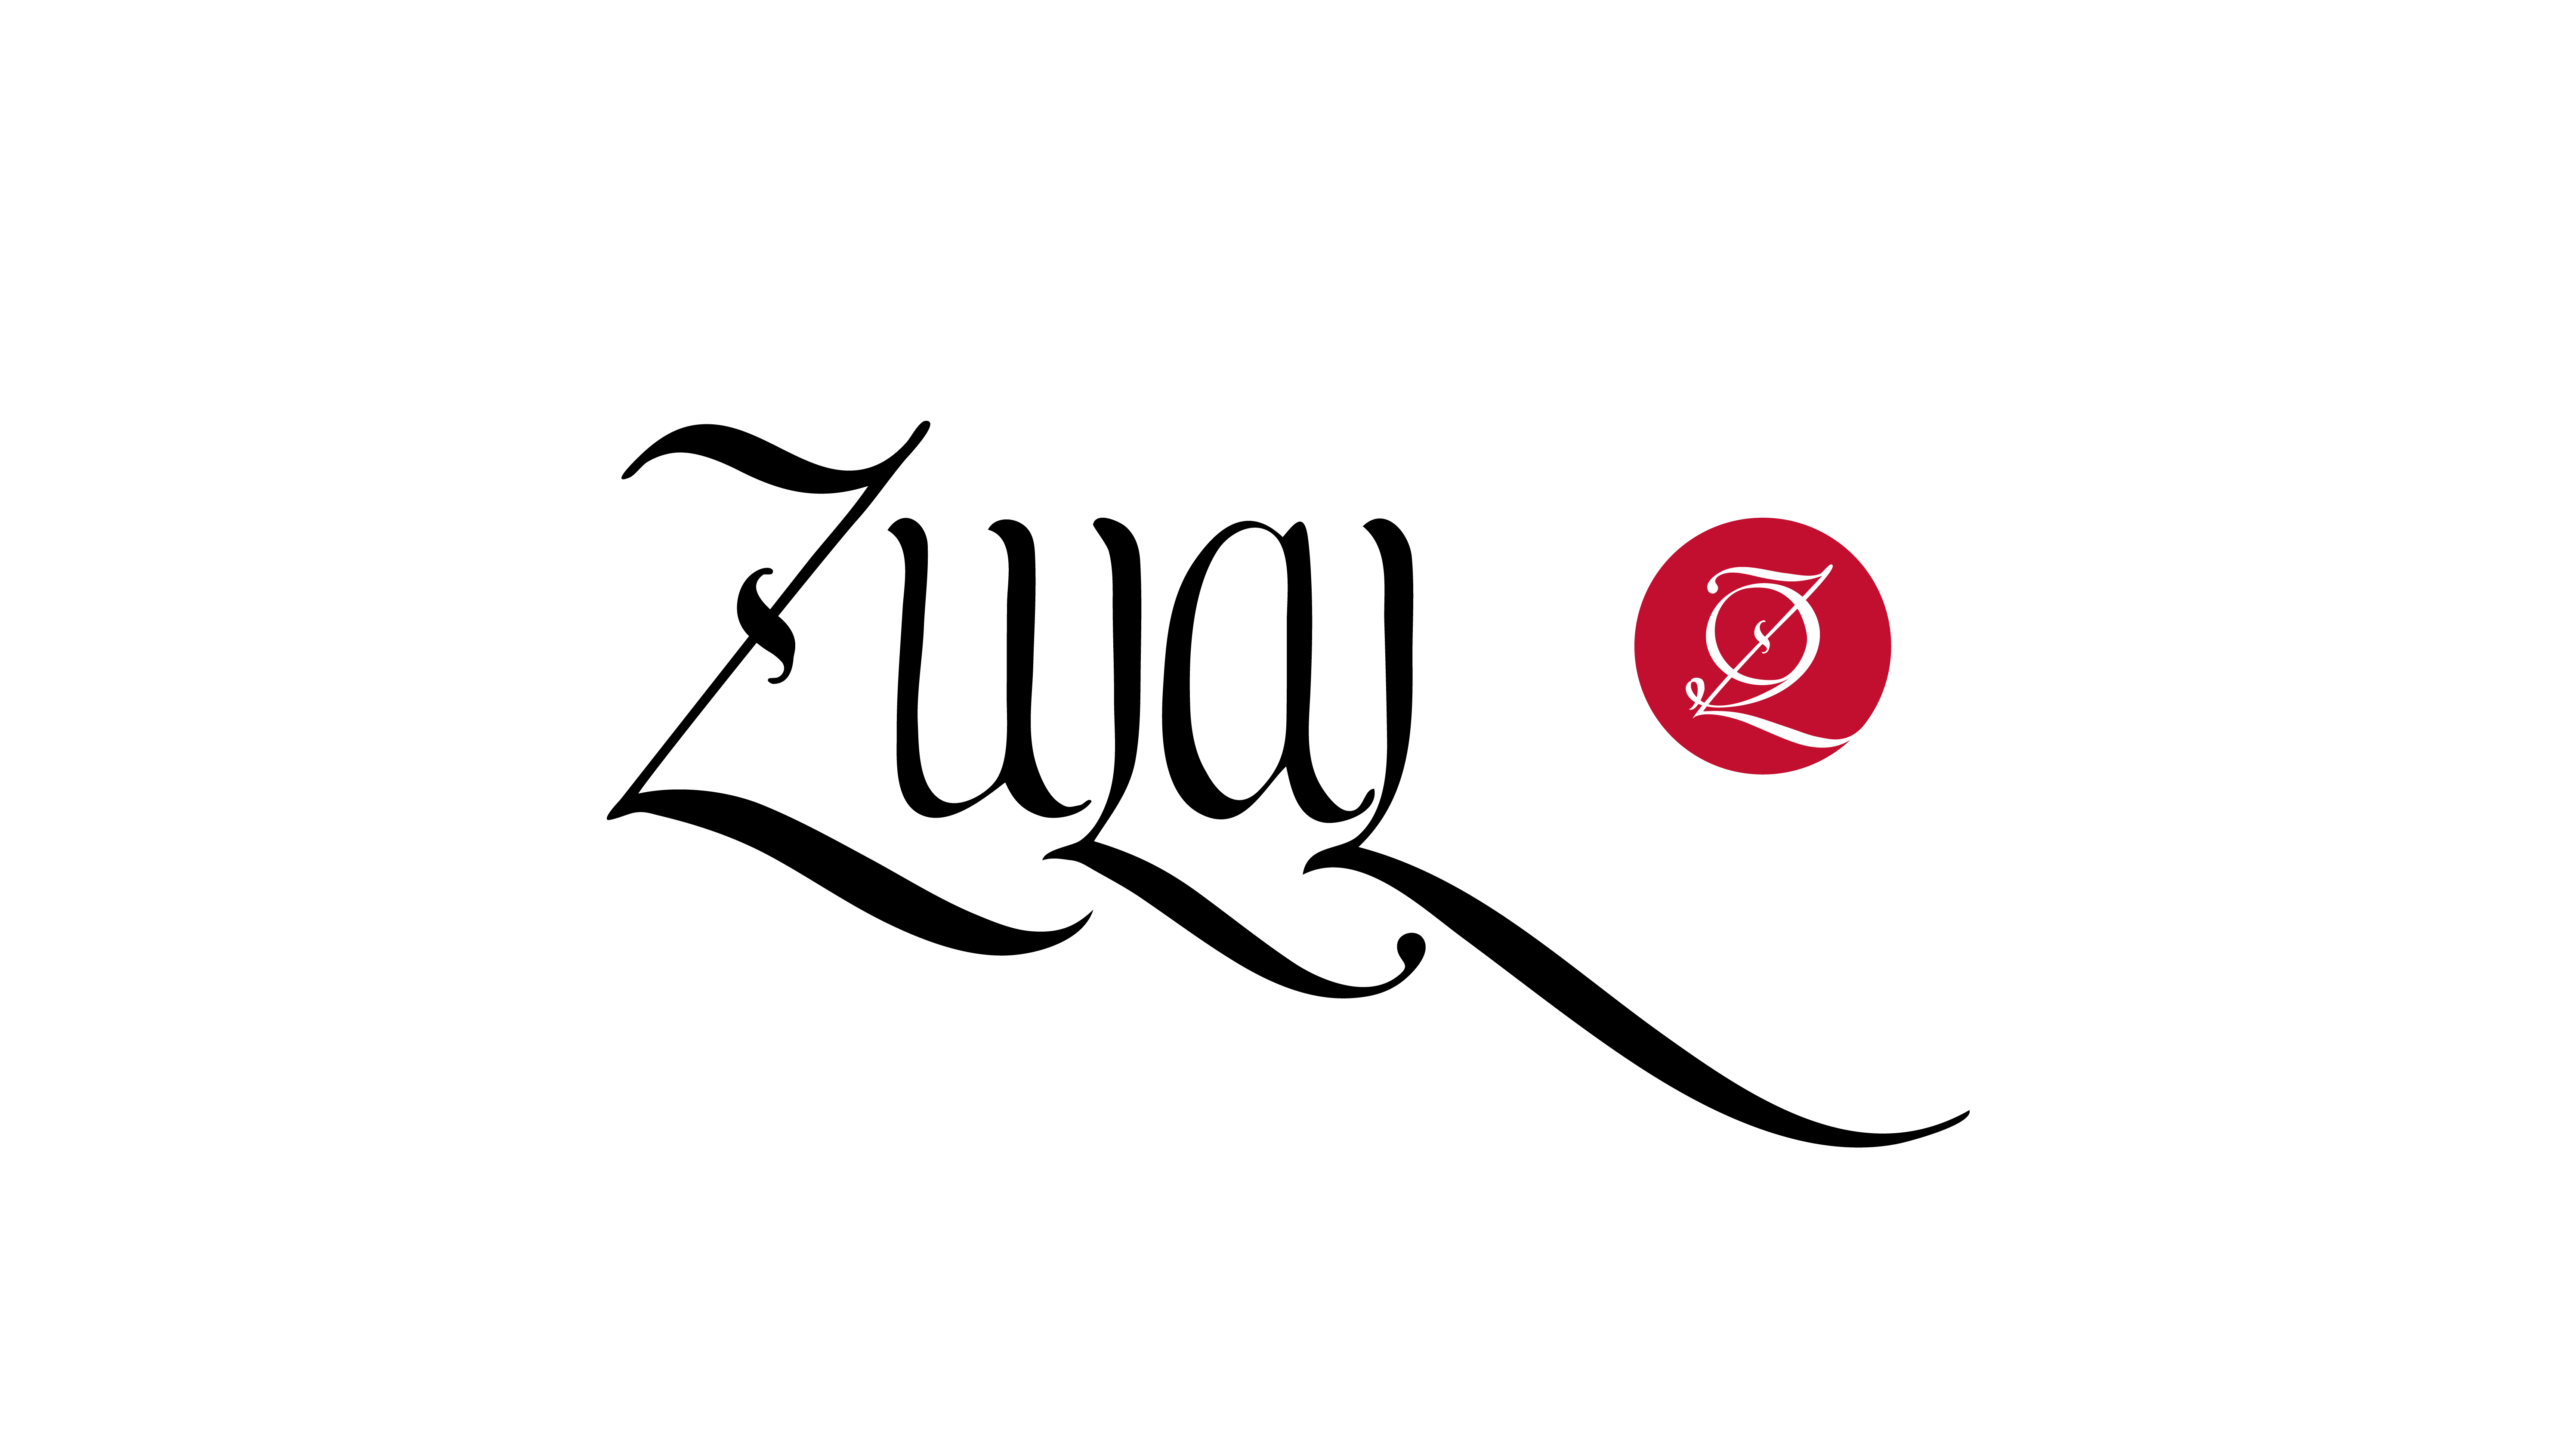 4612-zulal-logo16x9.png